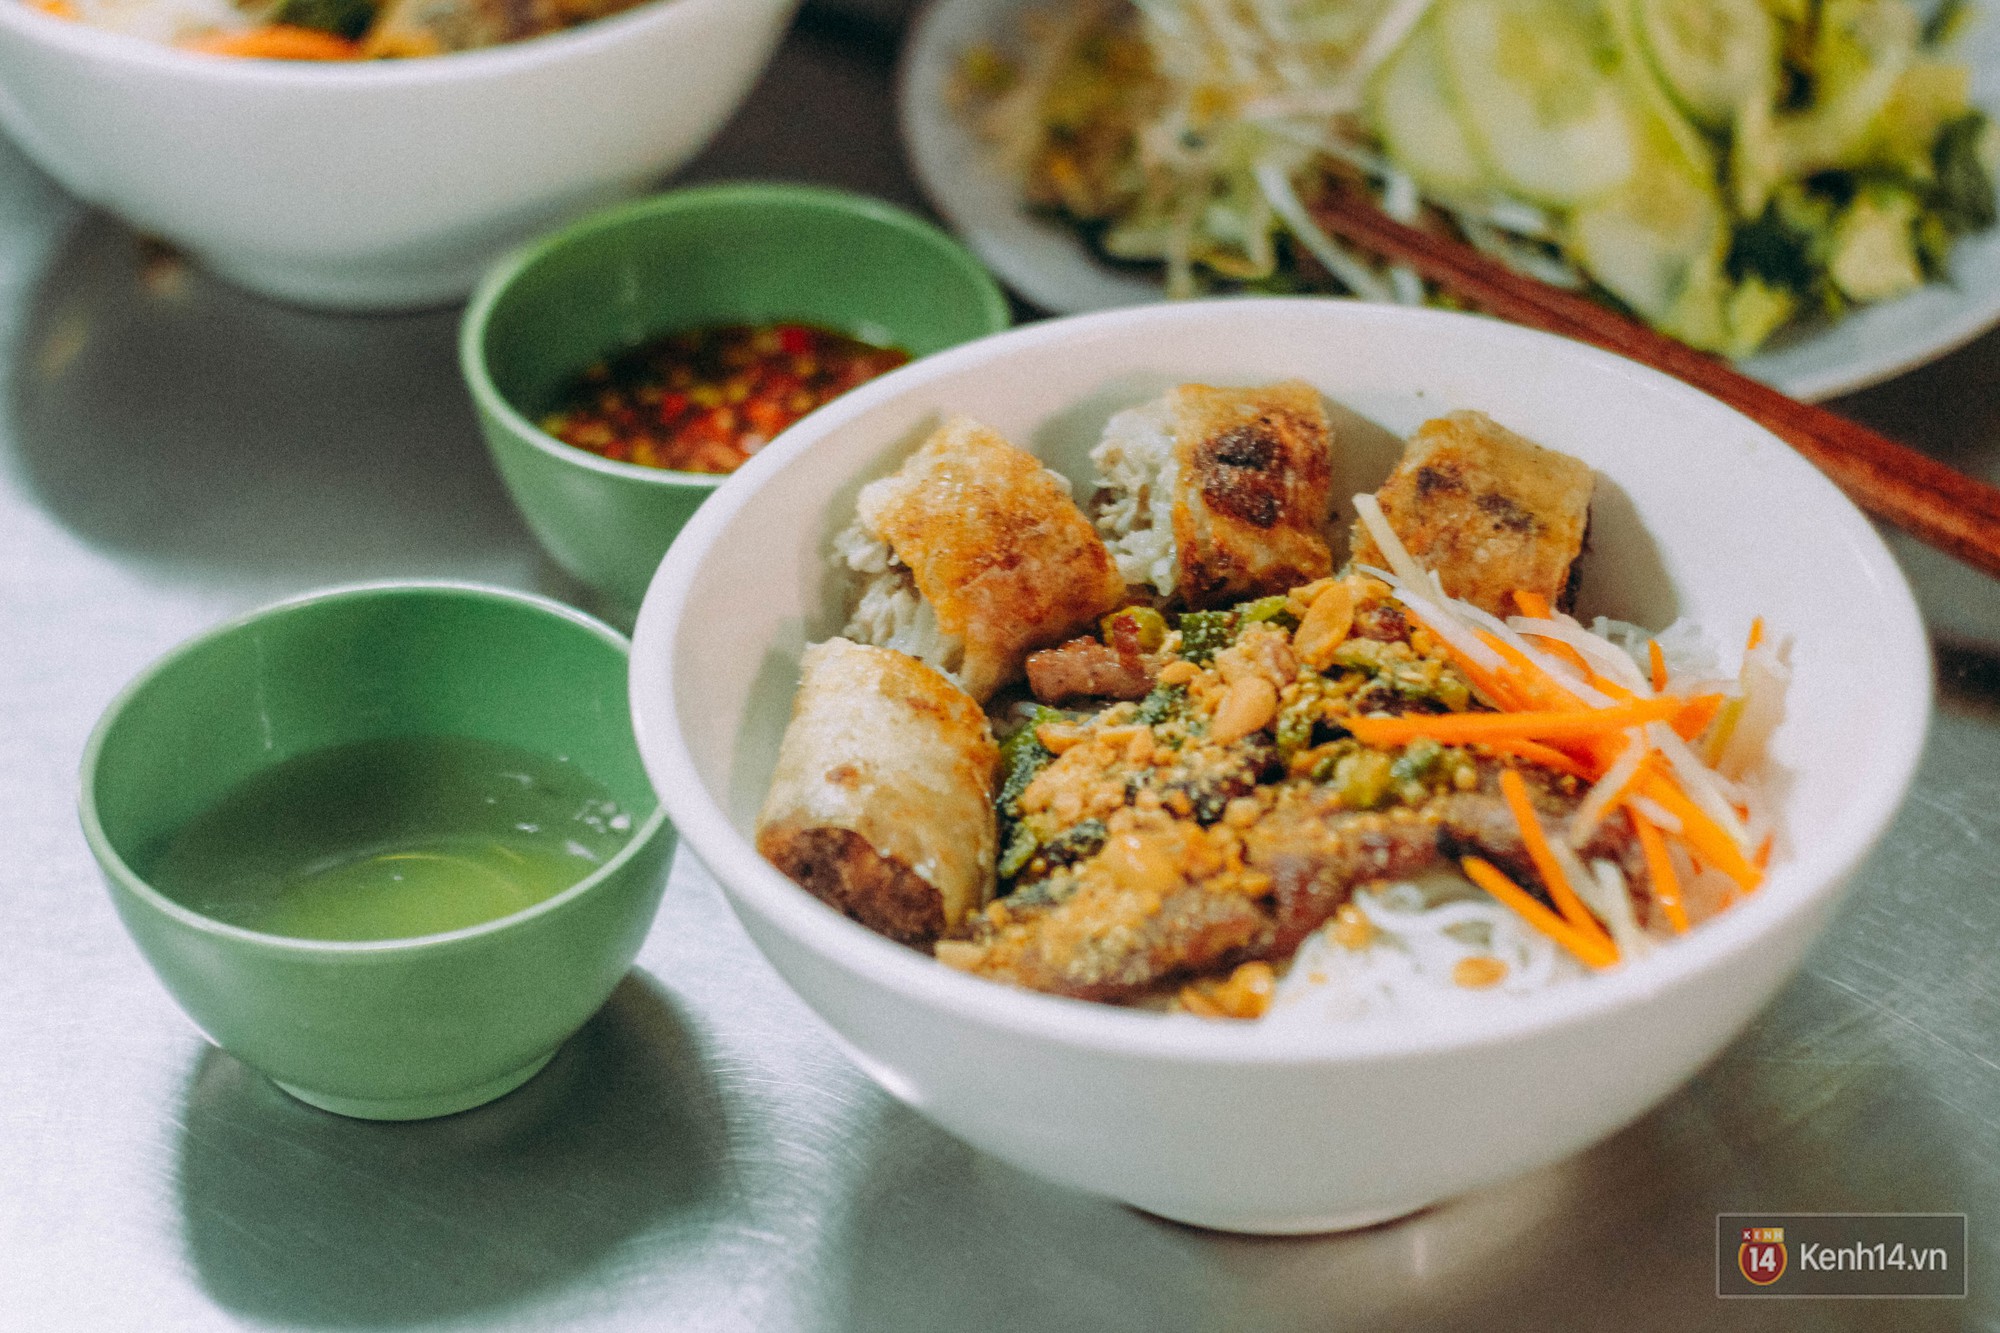 Ở Khu Phố Sầm Uất Nhất Sài Gòn, Có Hàng Bún Thịt Nướng Bà Thêm Đã “Trụ  Vững” Hơn Nửa Thế Kỉ